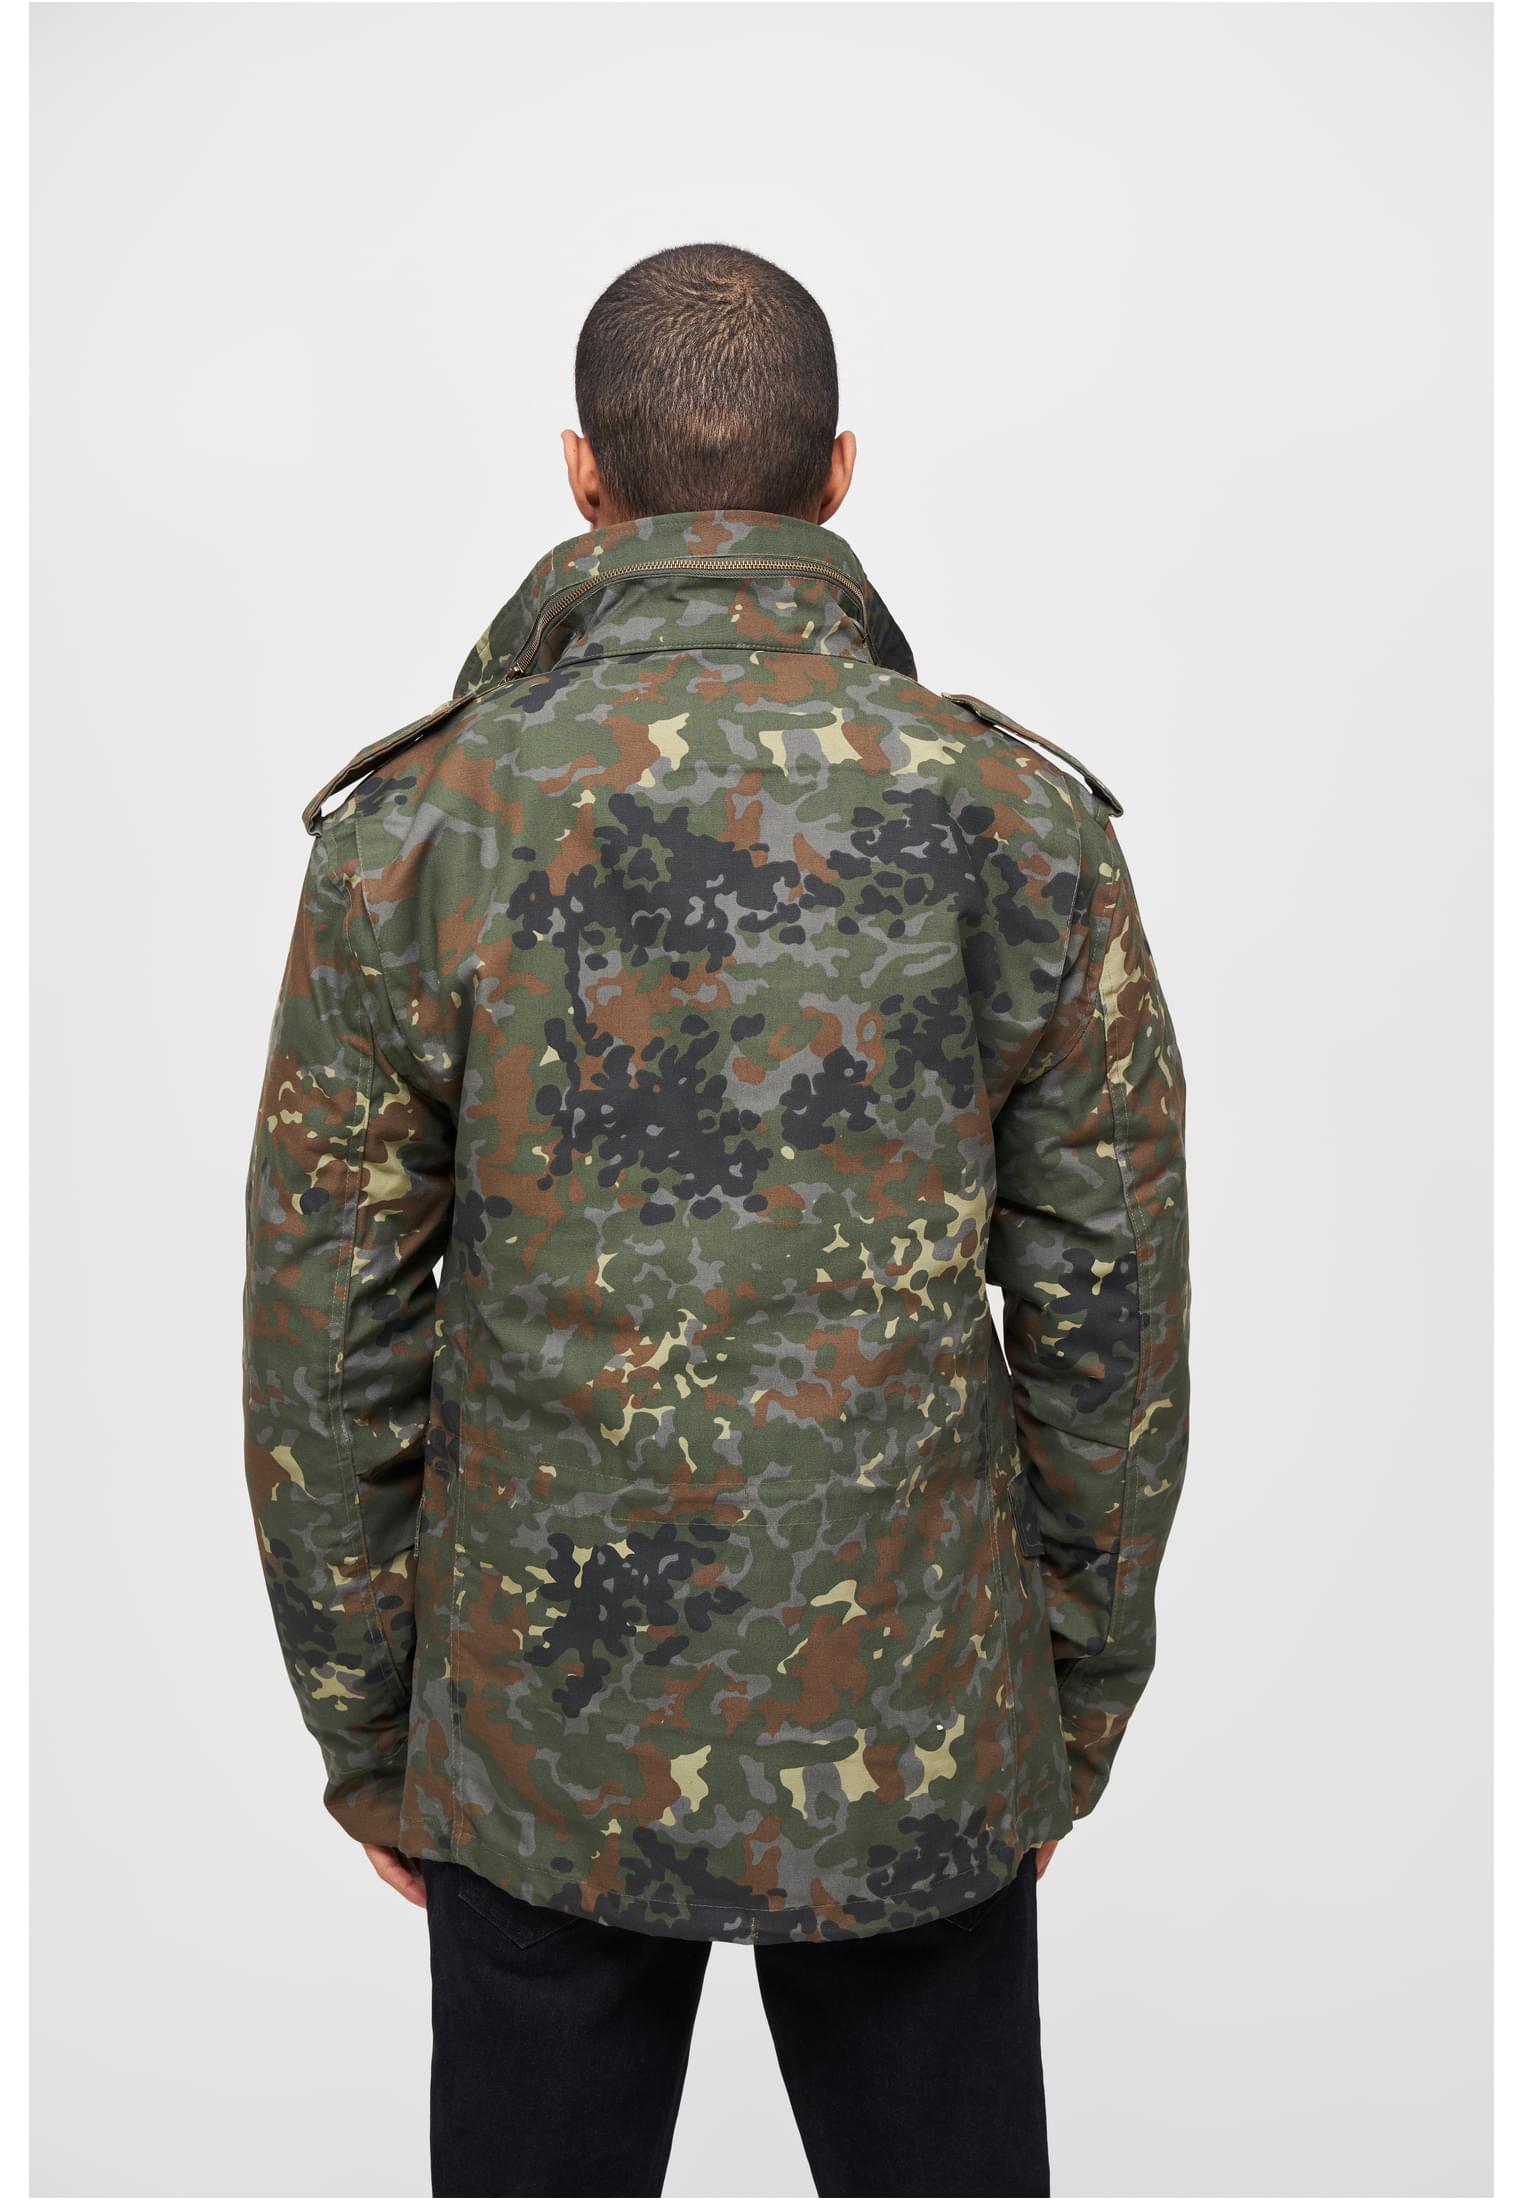 Jacken M-65 Field Jacket in Farbe flecktarn